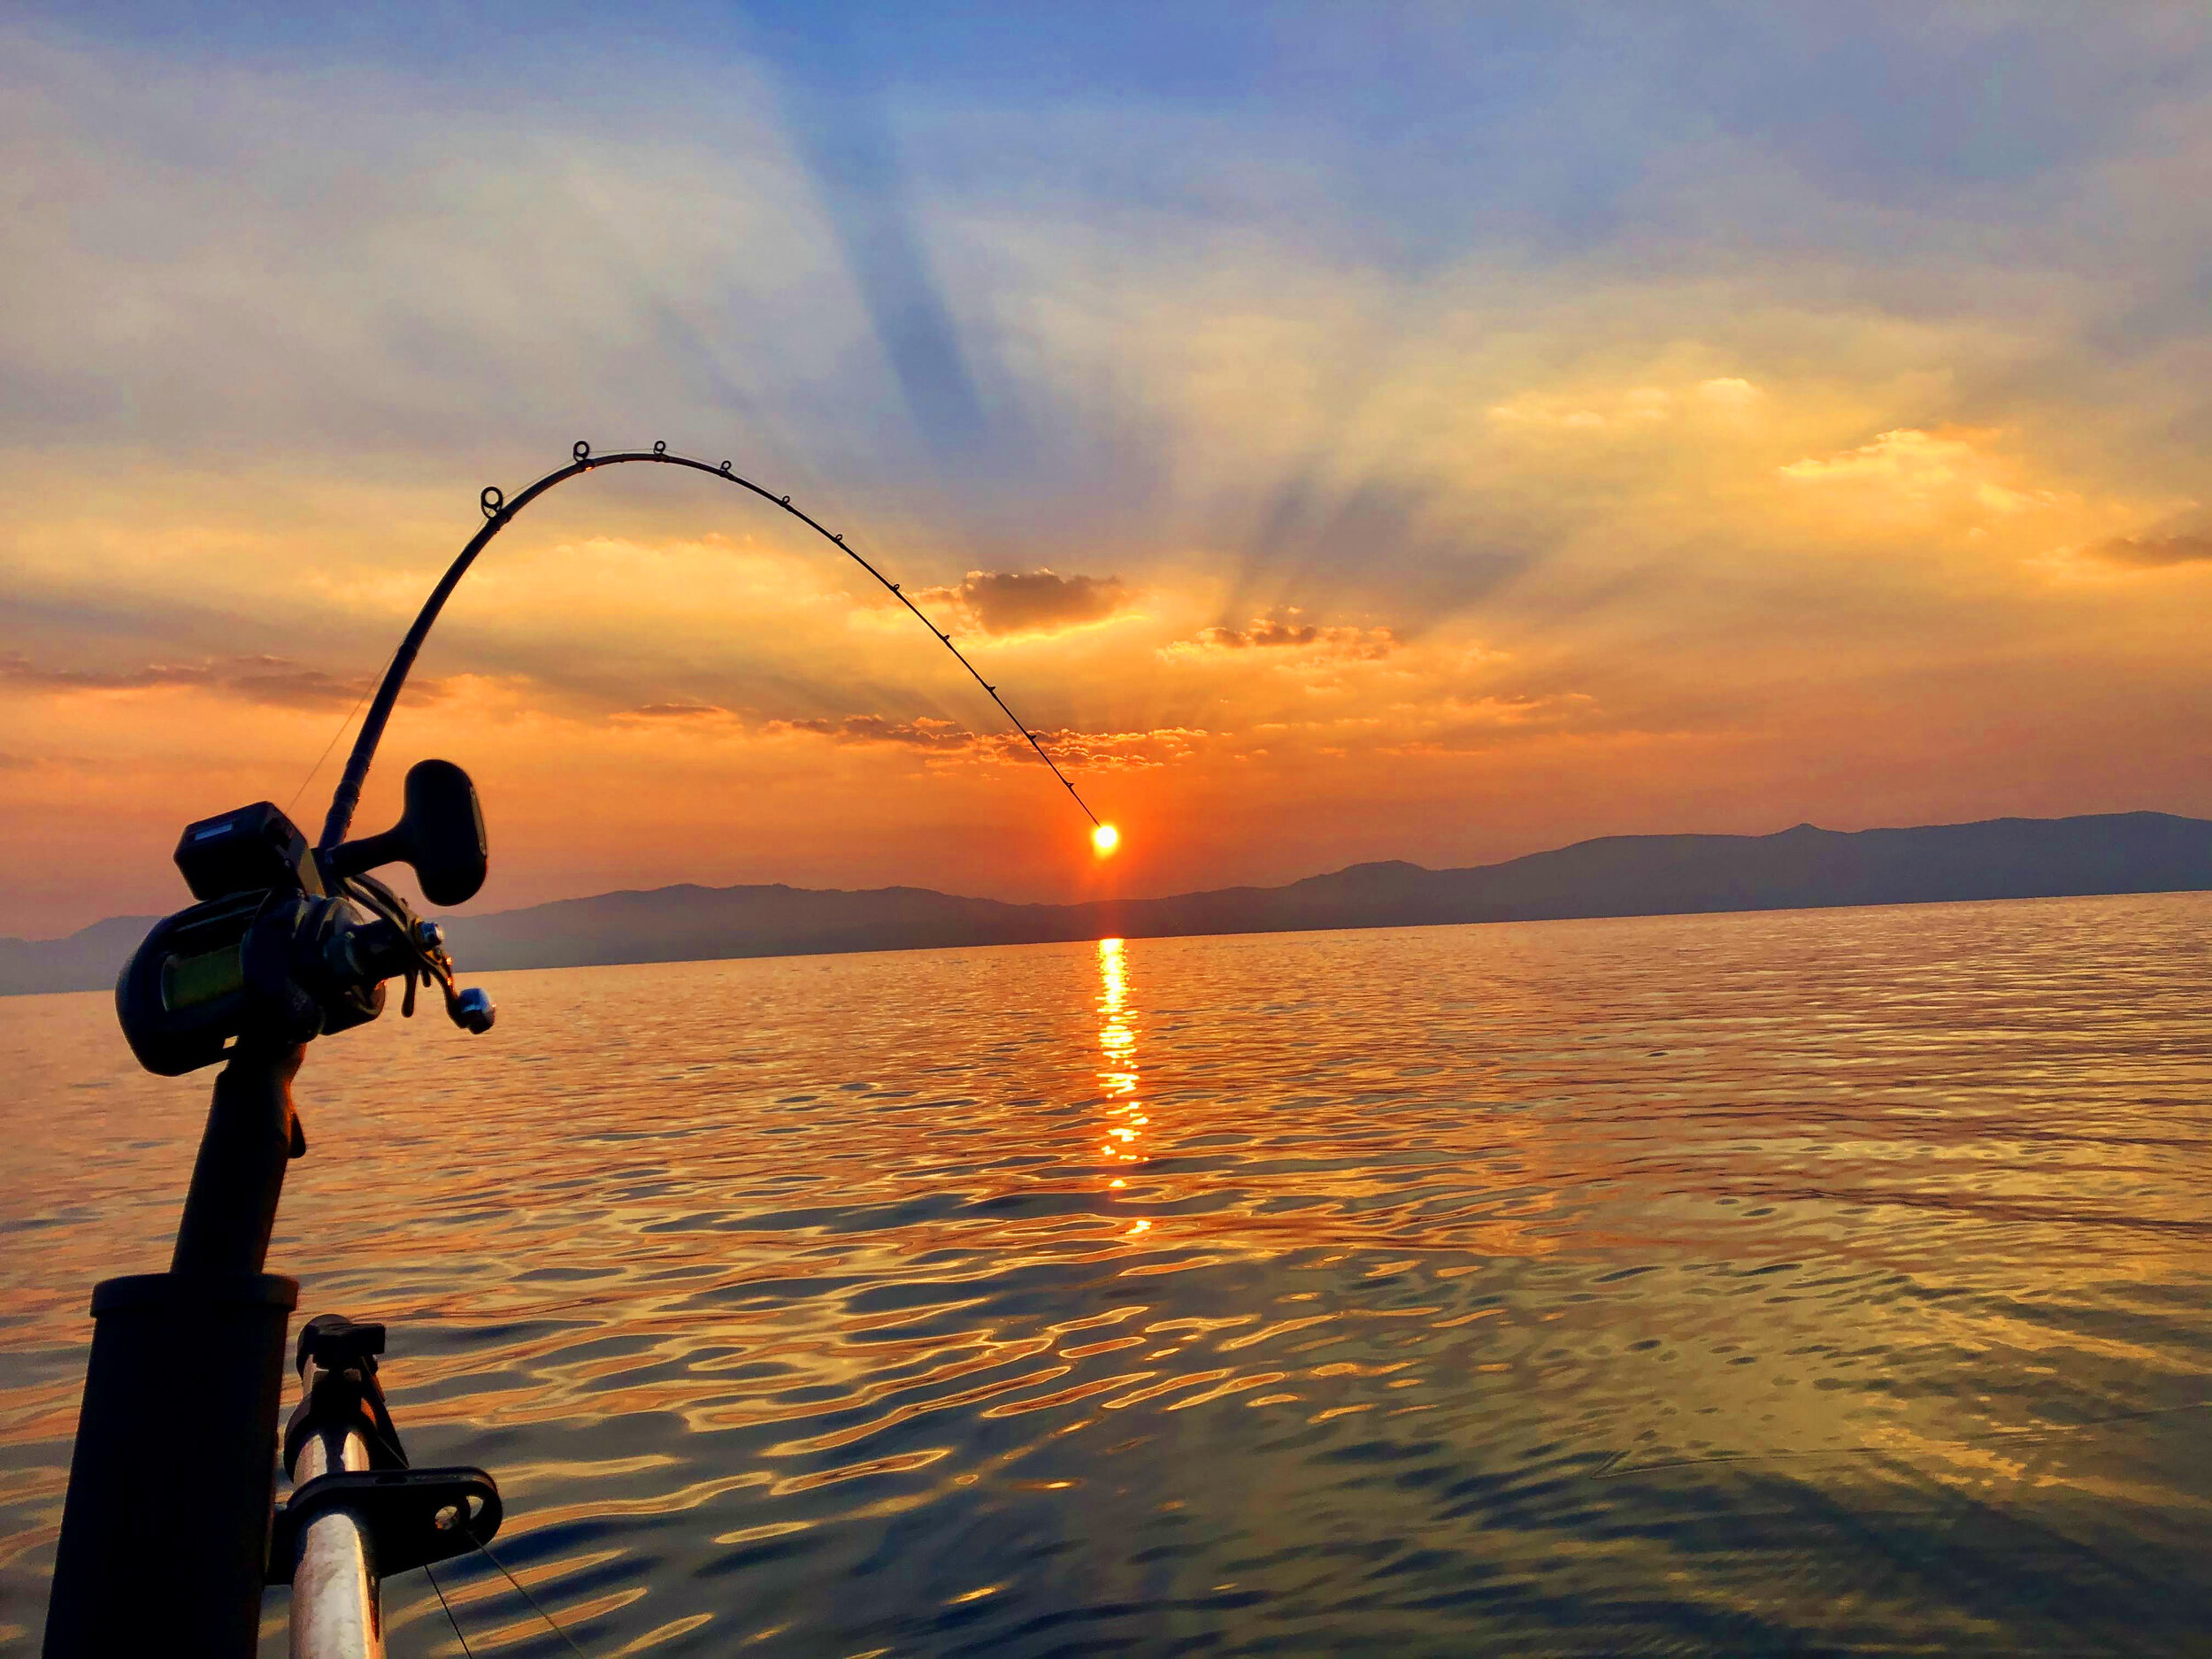 Guided Lake Tahoe & Pyramid Lake Fishing